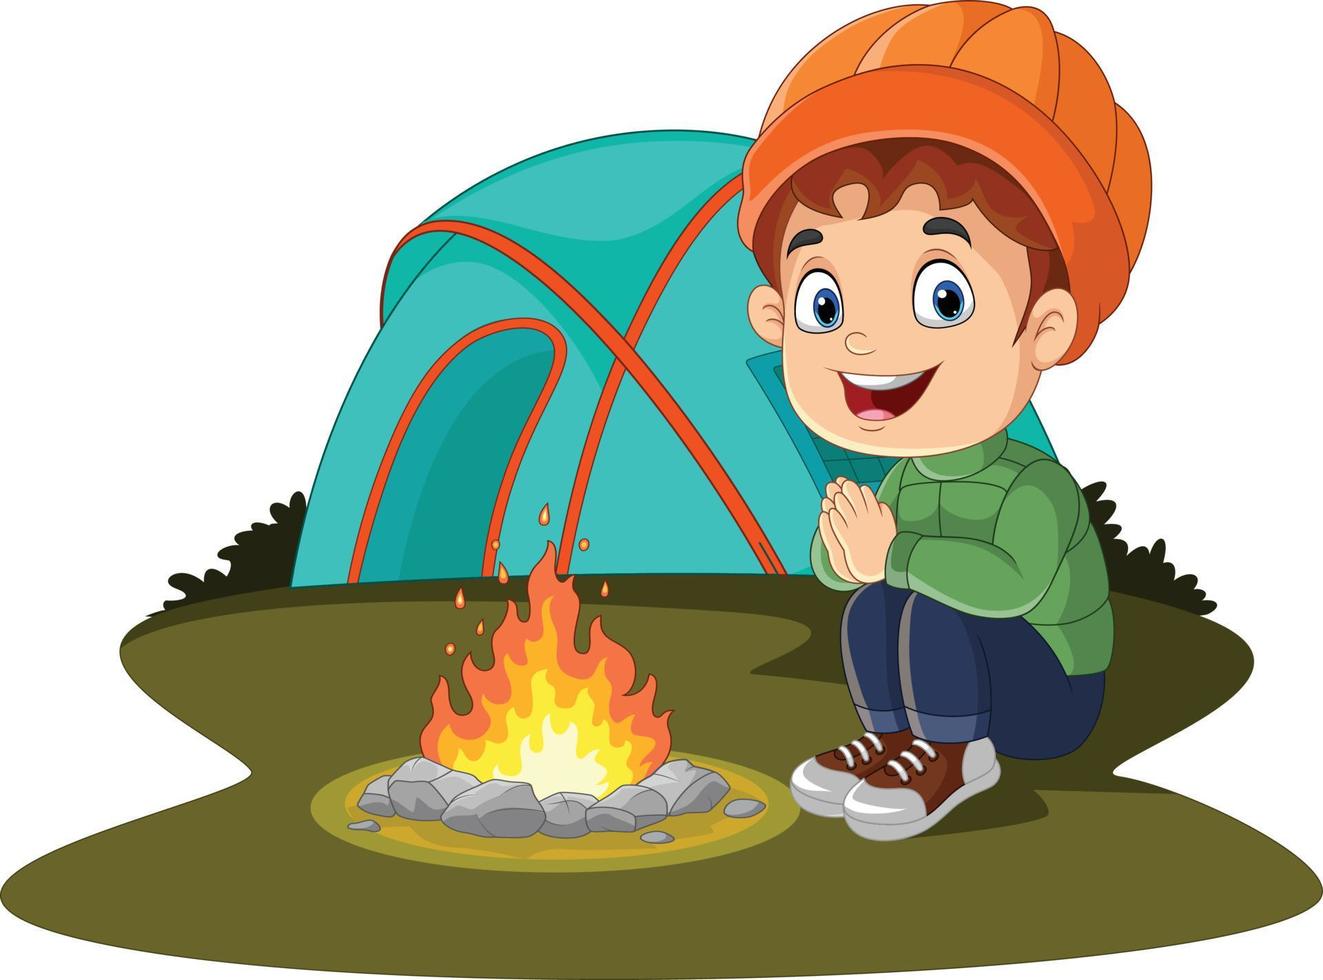 niño pequeño de dibujos animados acampando cerca de la fogata y la carpa vector